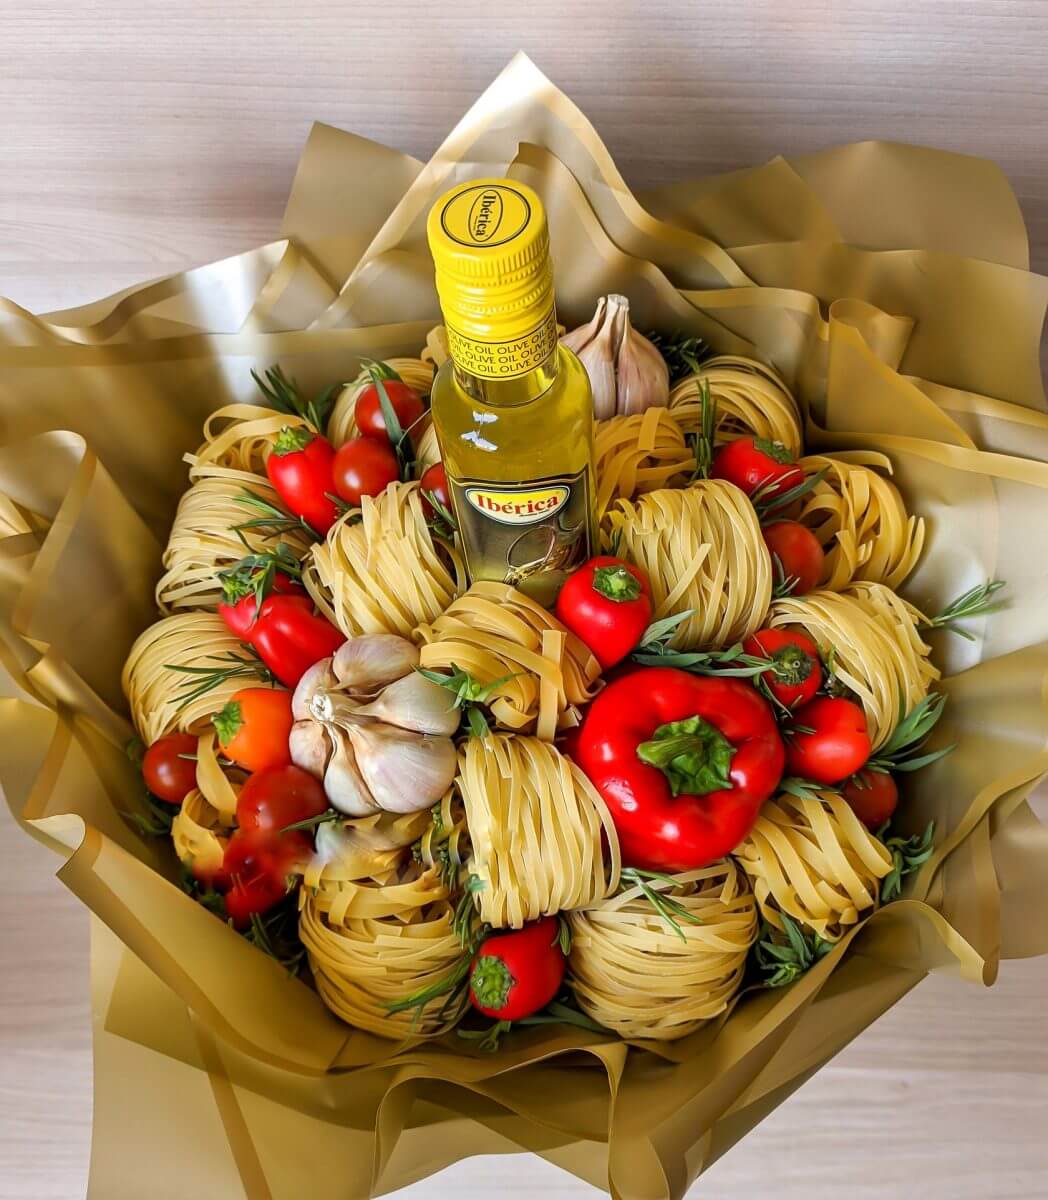 Как создать удивительный подарок: цветы с макаронами в коробке